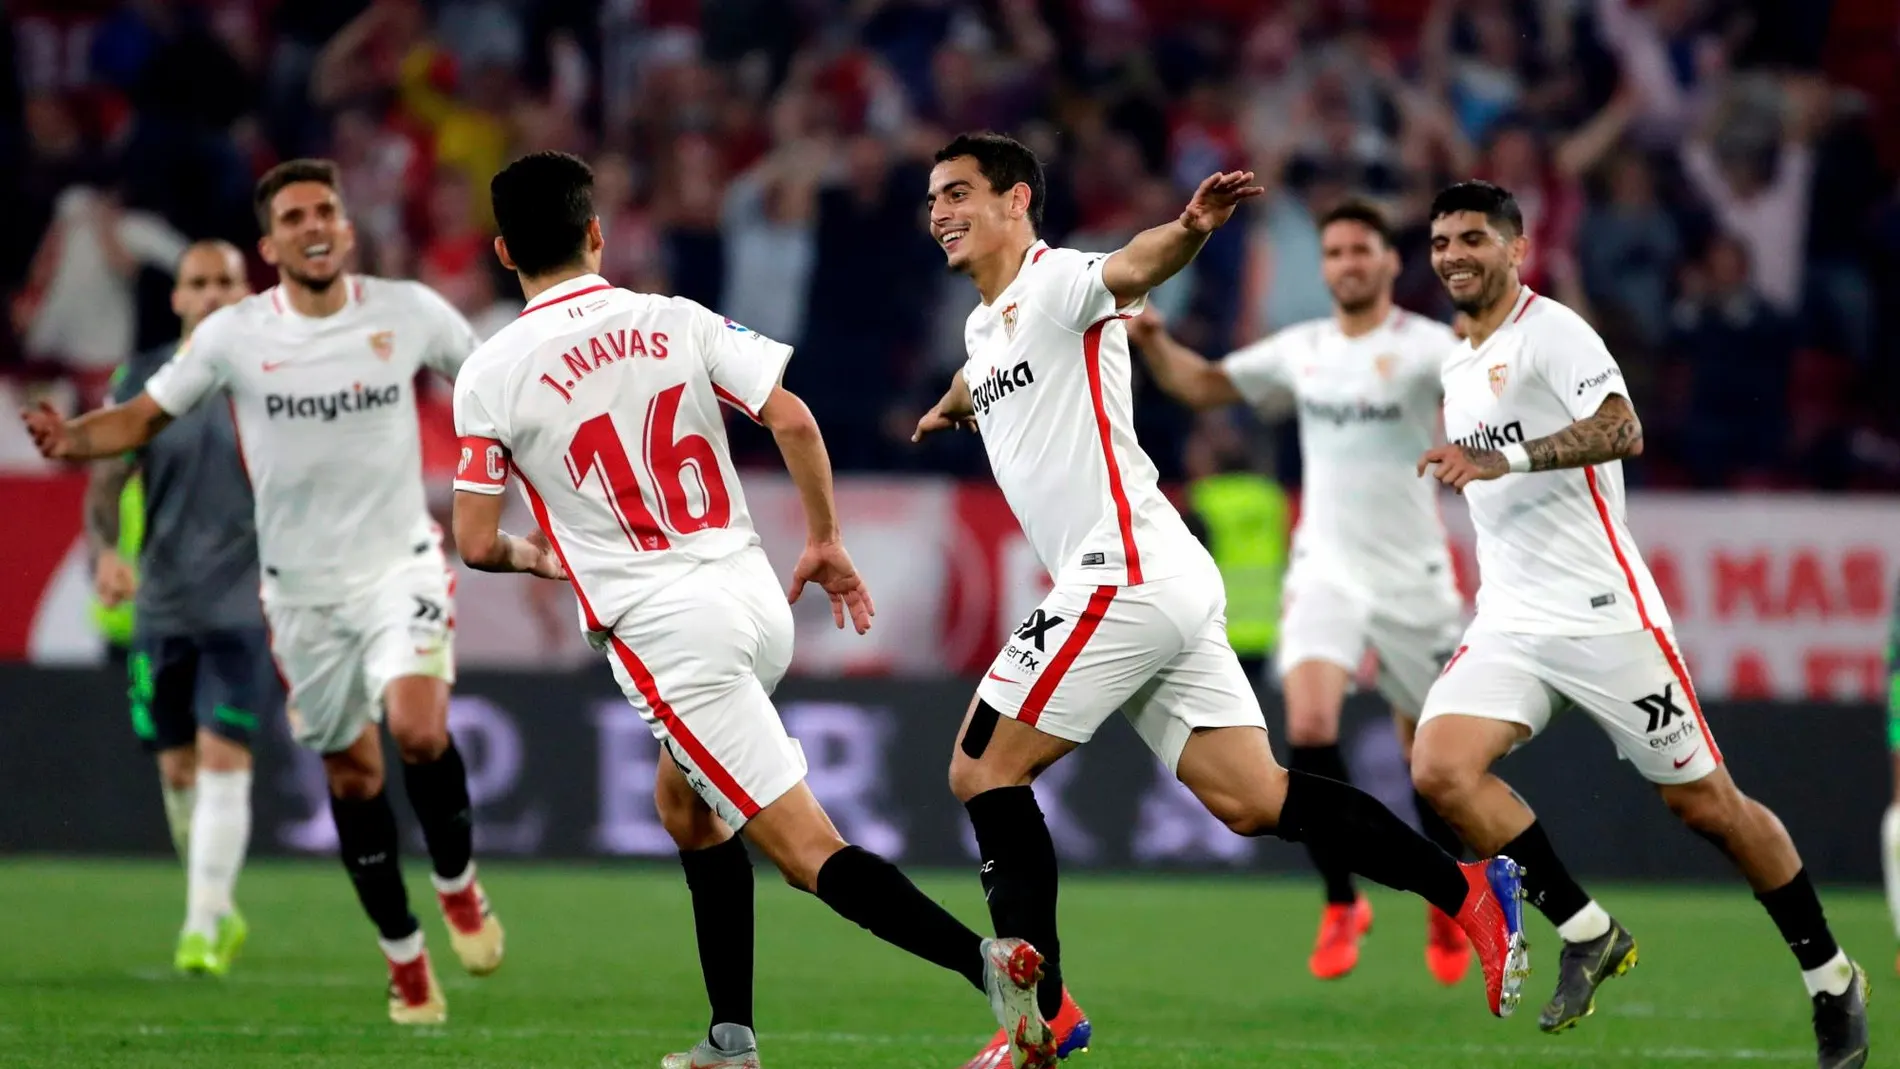 El delantero francés del Sevilla Wissam Ben Yedder celebra tras marcar su tercer gol ante la Real Sociedad / Foto: Efe